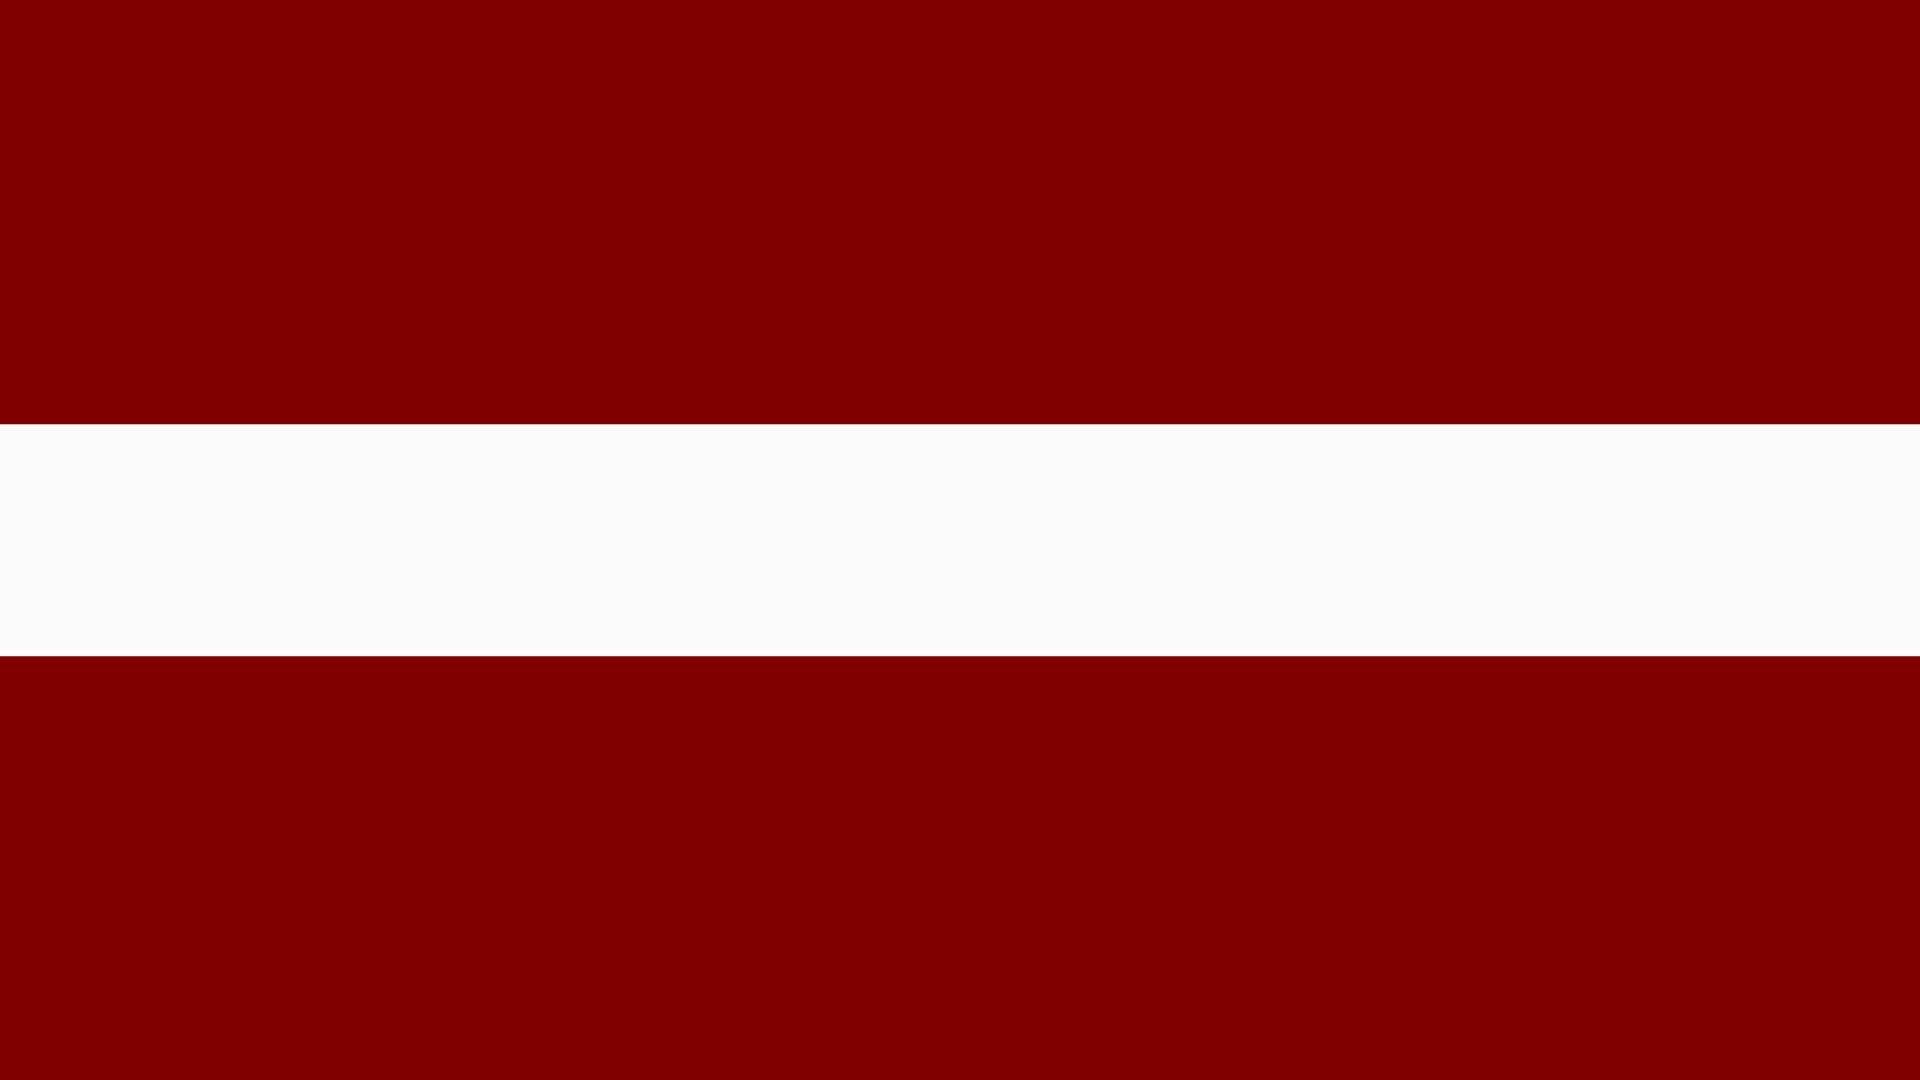 A bandeira da Letônia possui duas cores: vermelho e branco. Ela é dividida em 3 faixas, sendo a faixa superior vermelha, a do meio branca e a inferior, vermelha também.